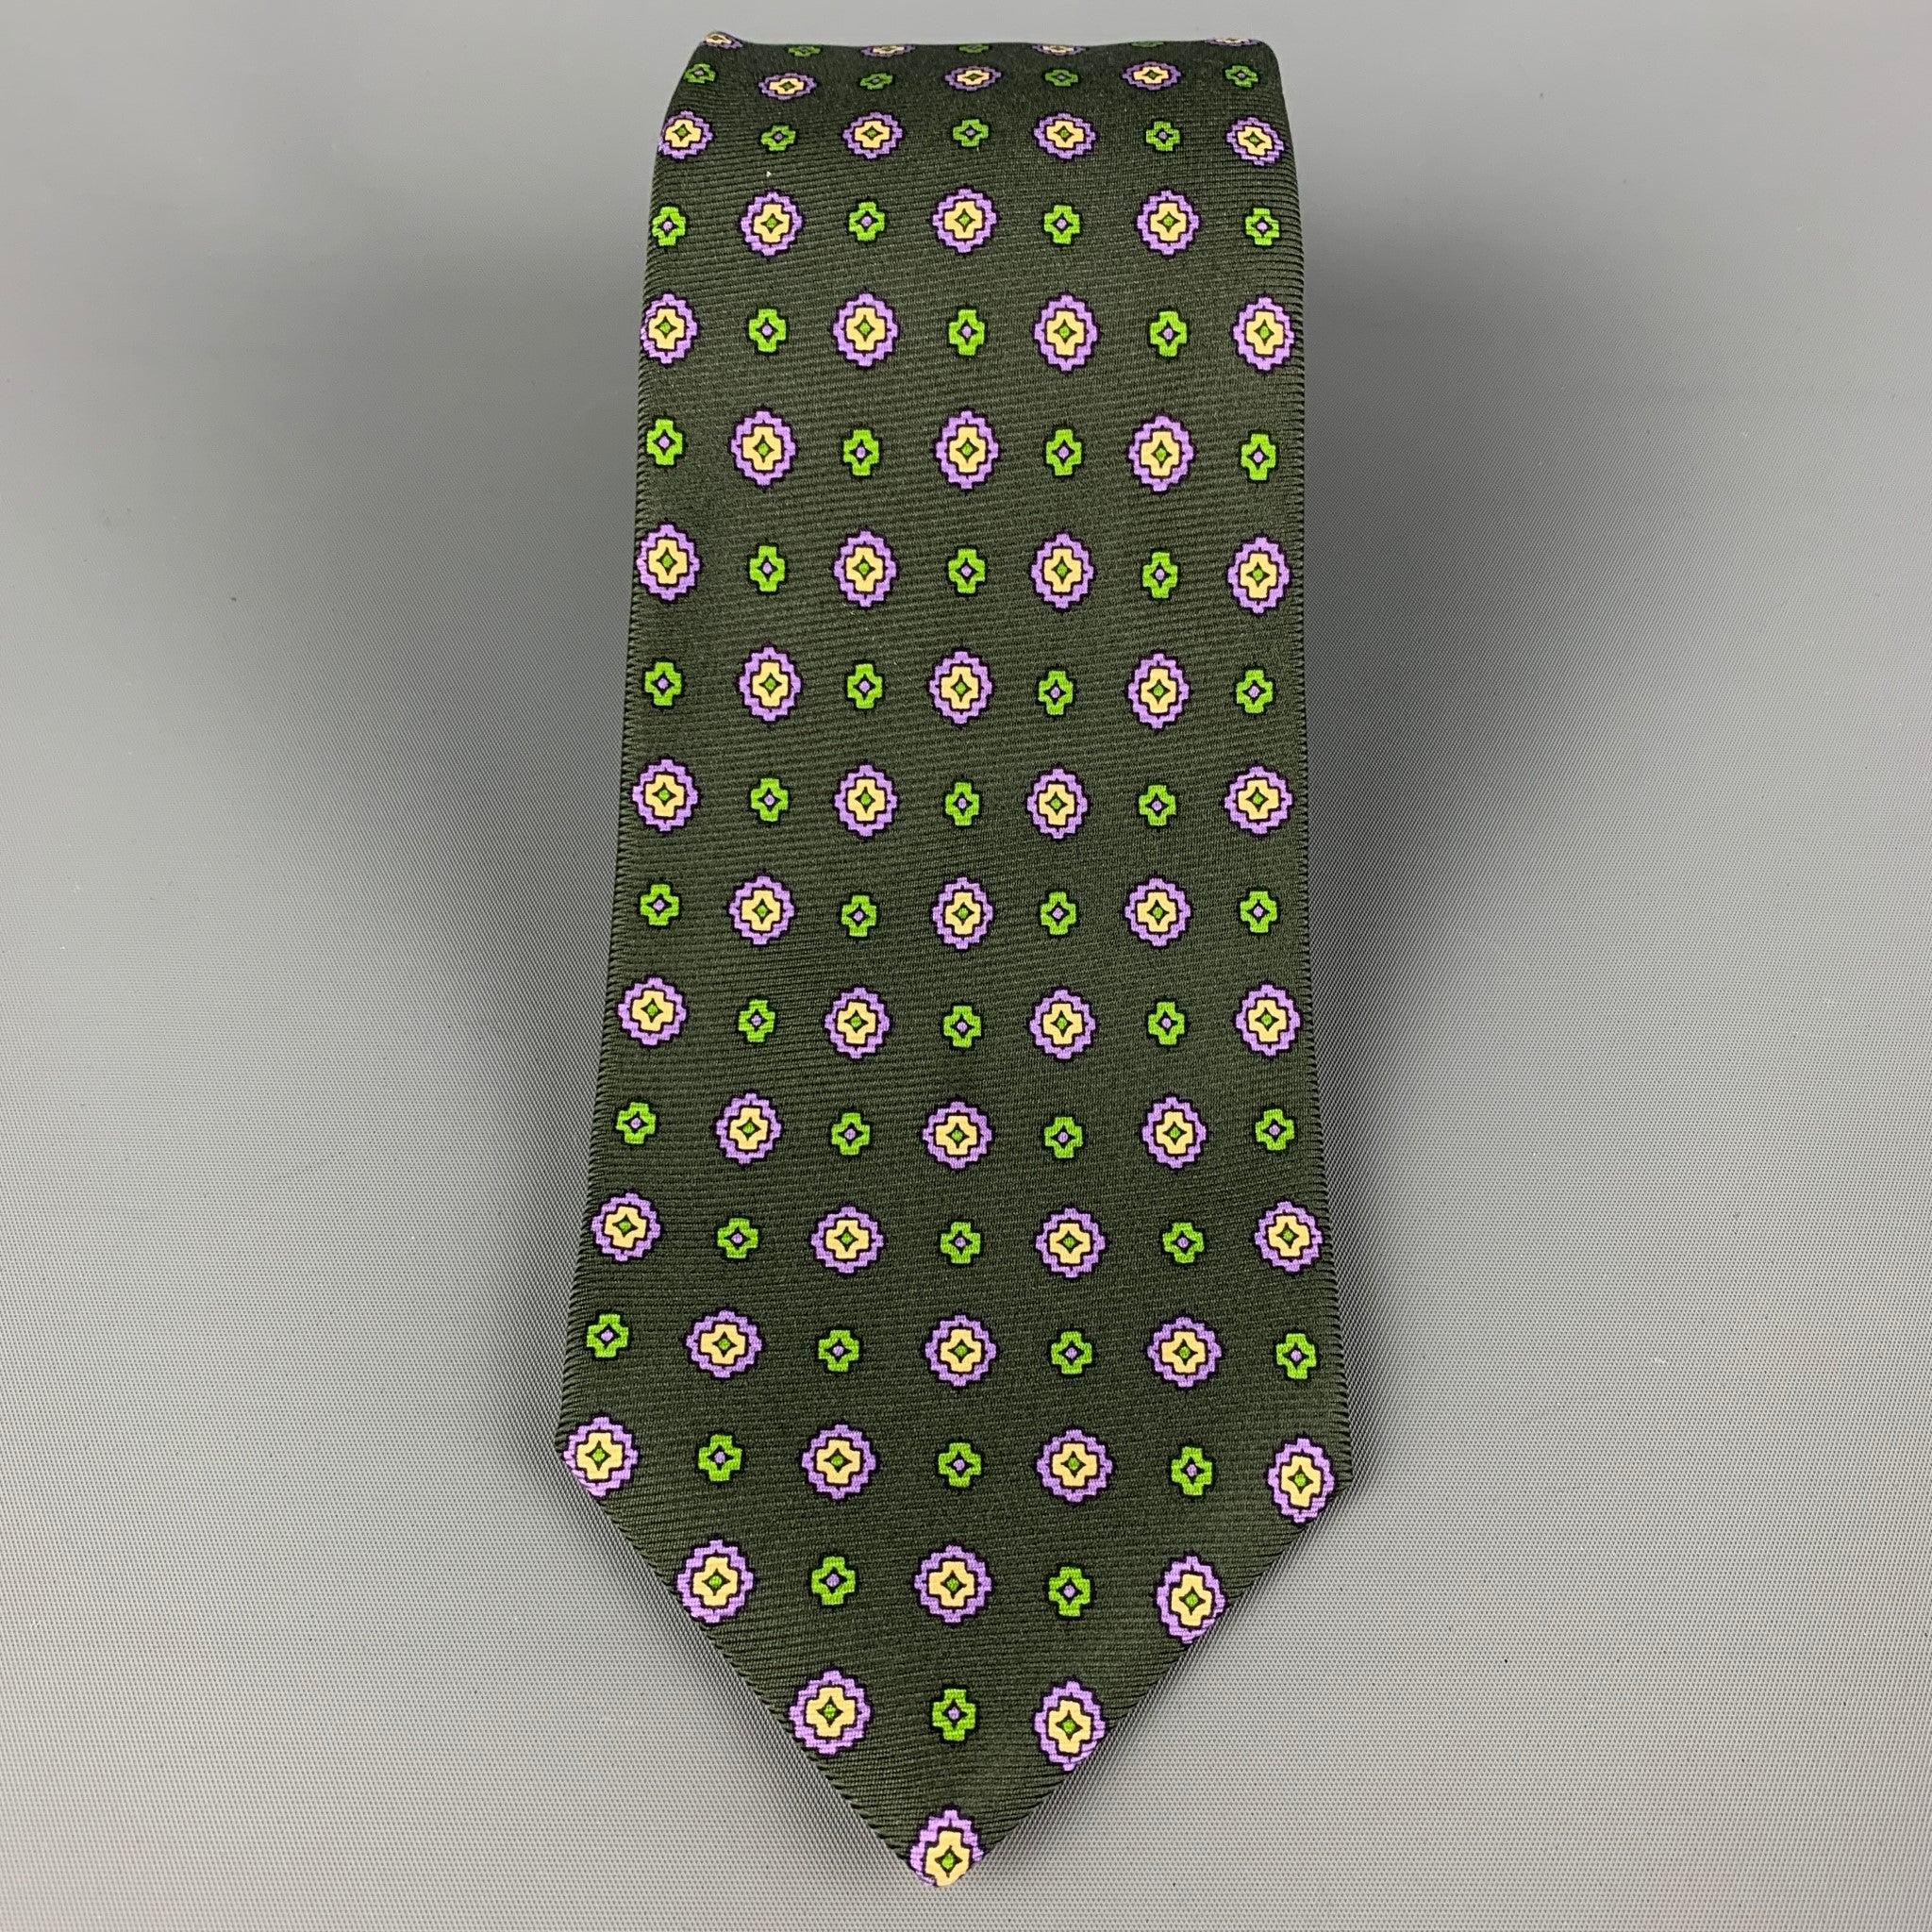 La cravate KITON existe en vert foncé et en violet.
 en soie avec un imprimé floral abstrait. Fabriqué en Italie. Très bon état d'origine. Largeur : 4 pouces  Longueur : 61 pouces 

  
  
 
Référence Sui Generis : 120382
Catégorie : Cravate
Plus de